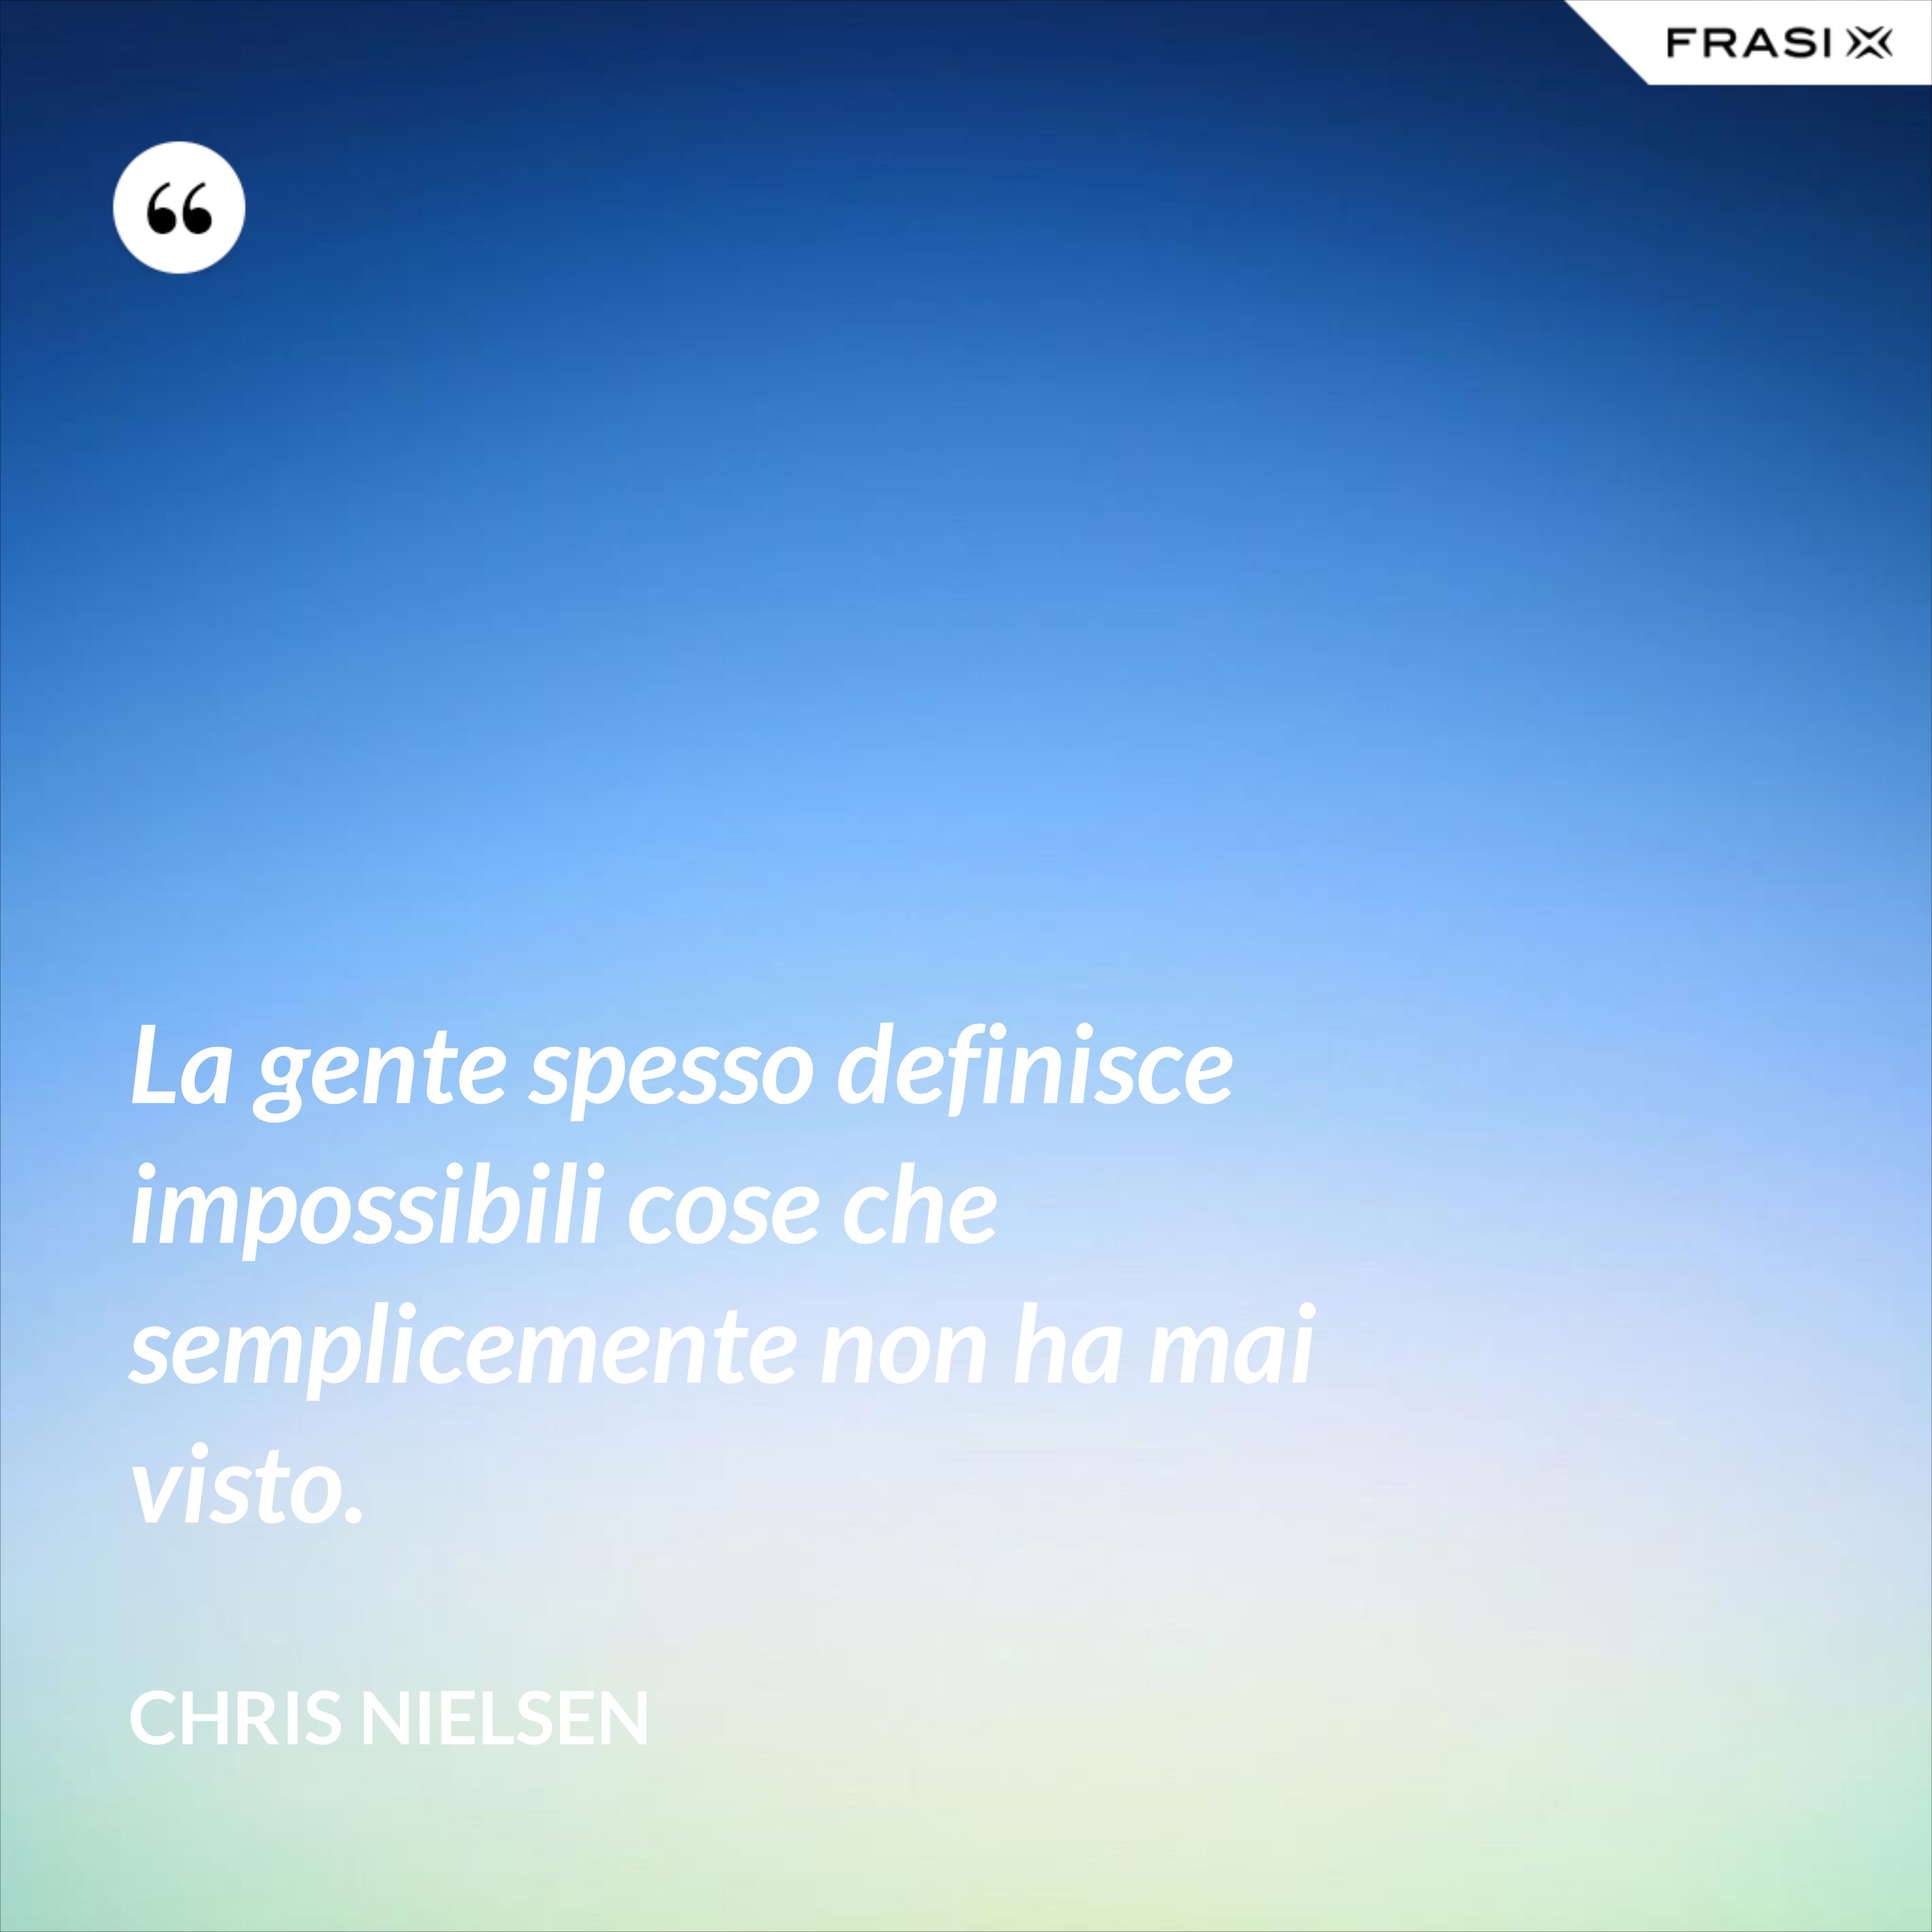 La gente spesso definisce impossibili cose che semplicemente non ha mai visto. - Chris Nielsen